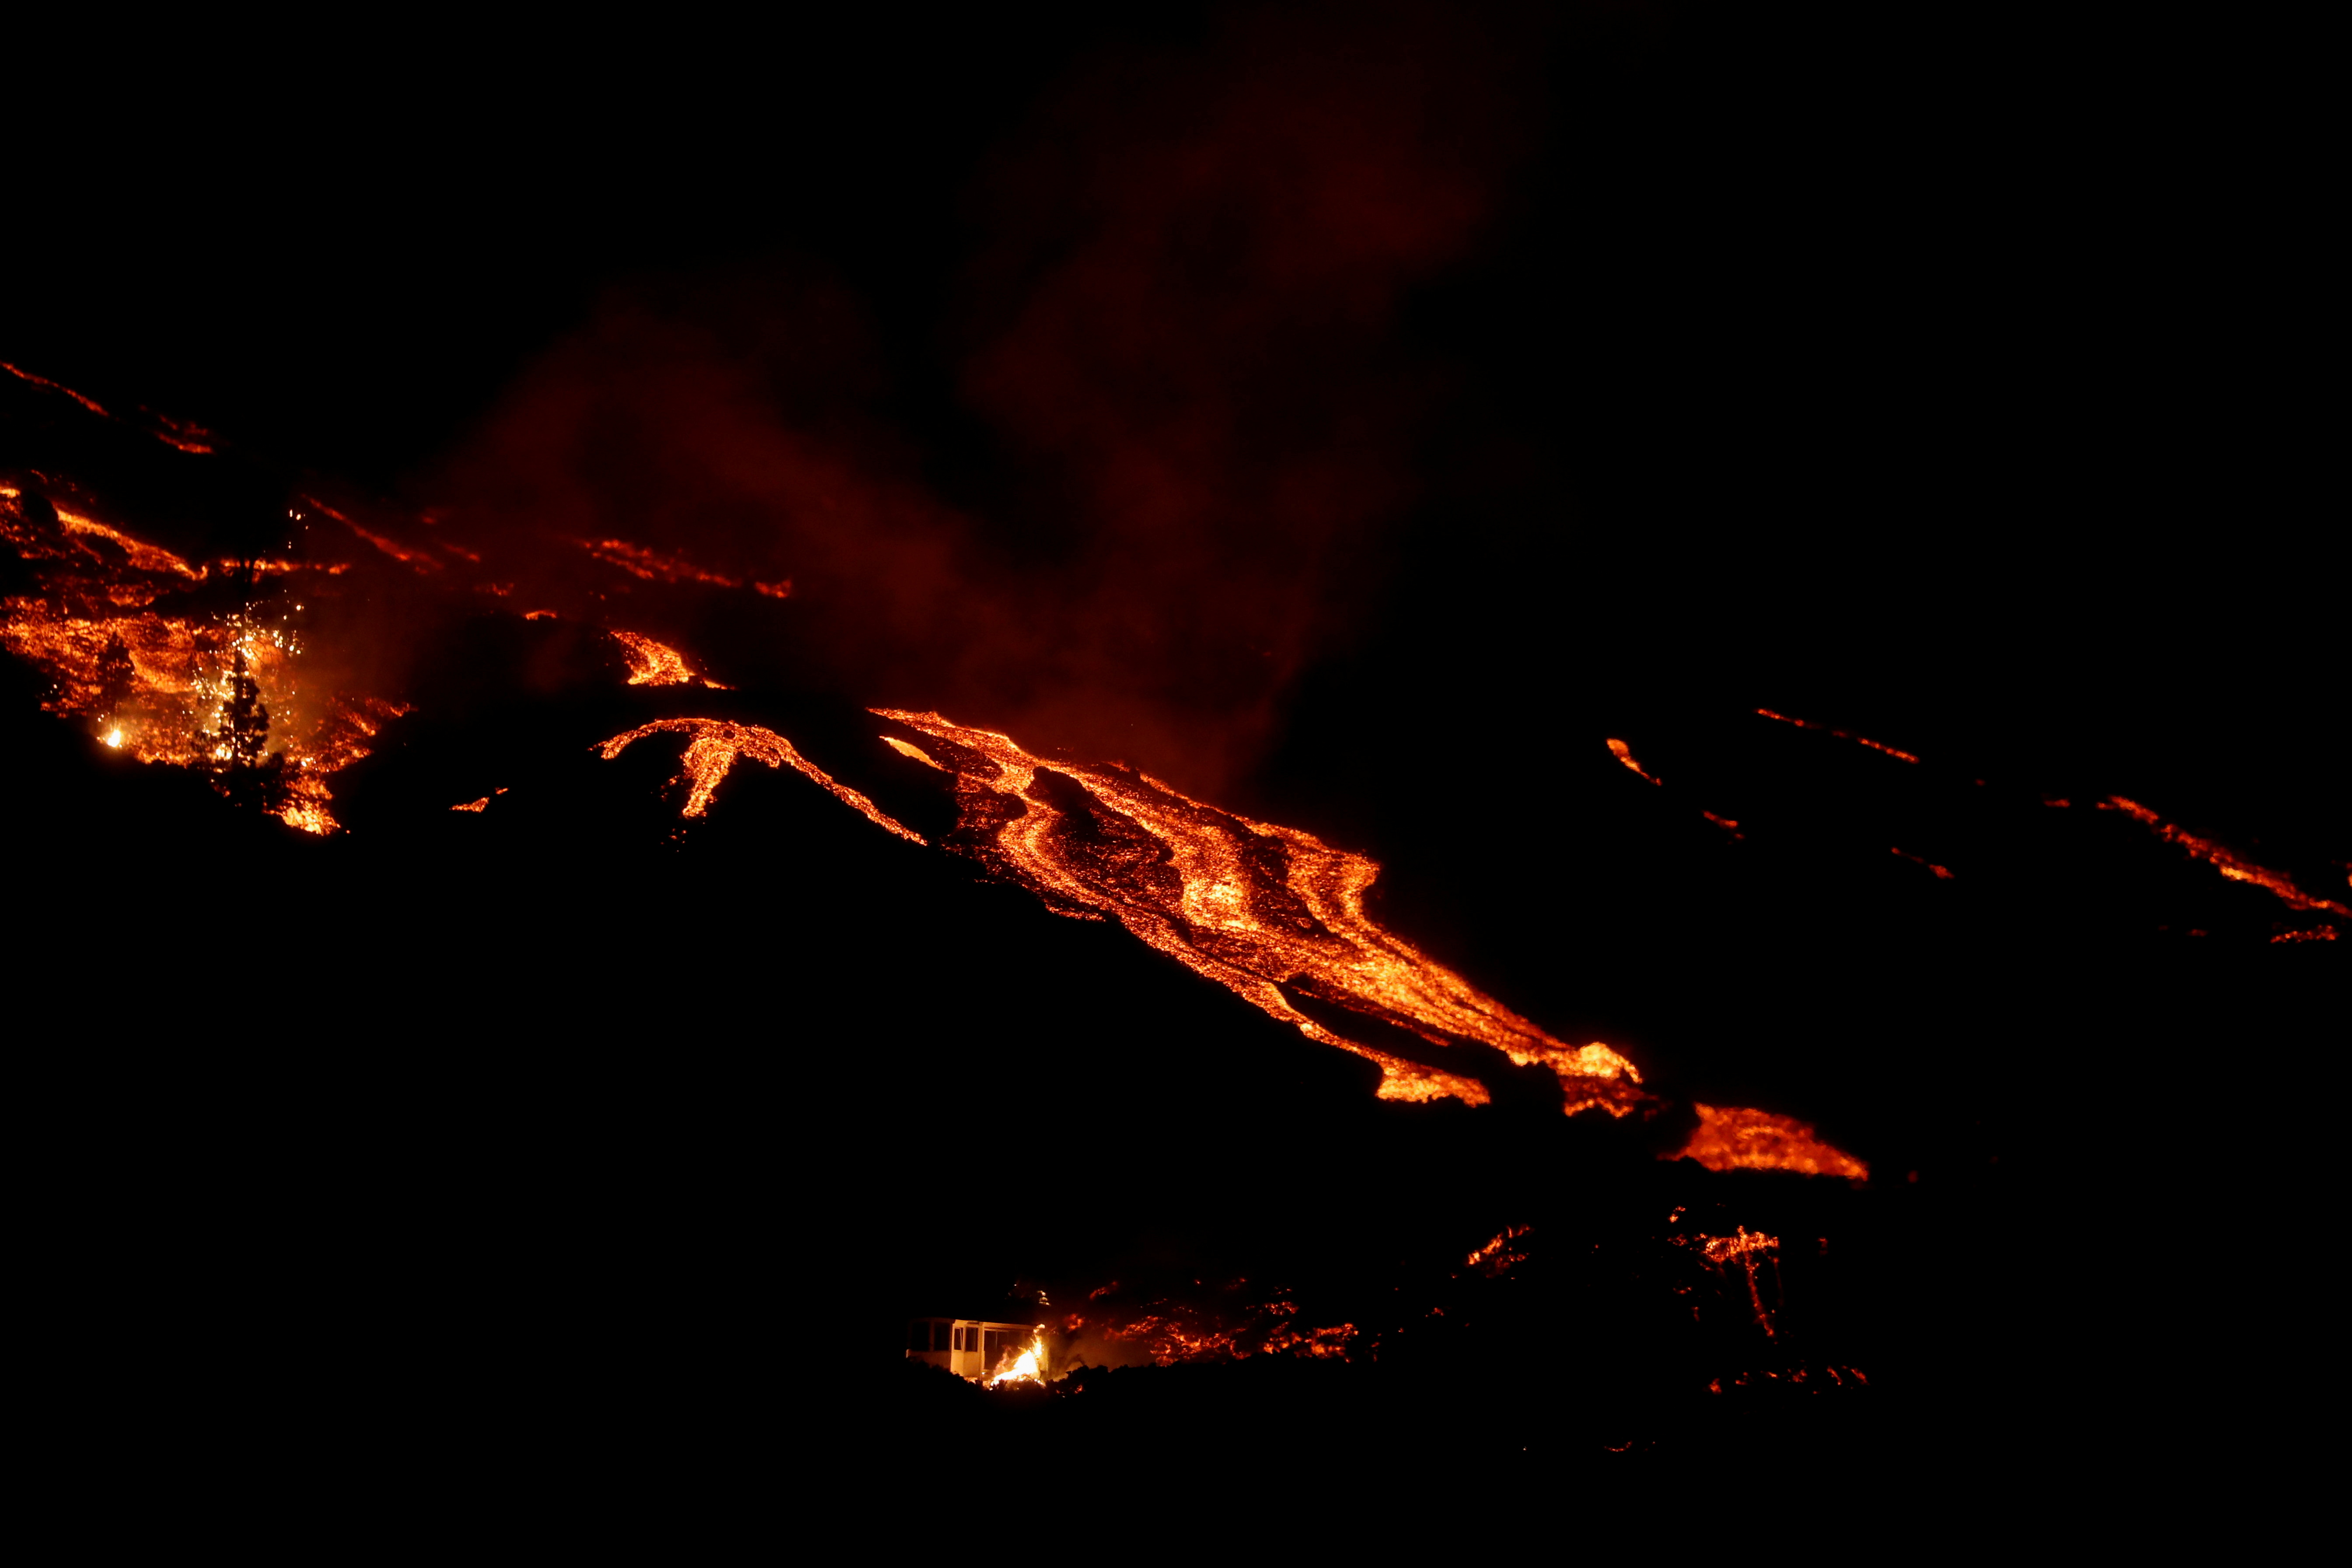 La lava del volcán fluye cuesta abajo junto a una casa en llamas (REUTERS/Susana Vera)